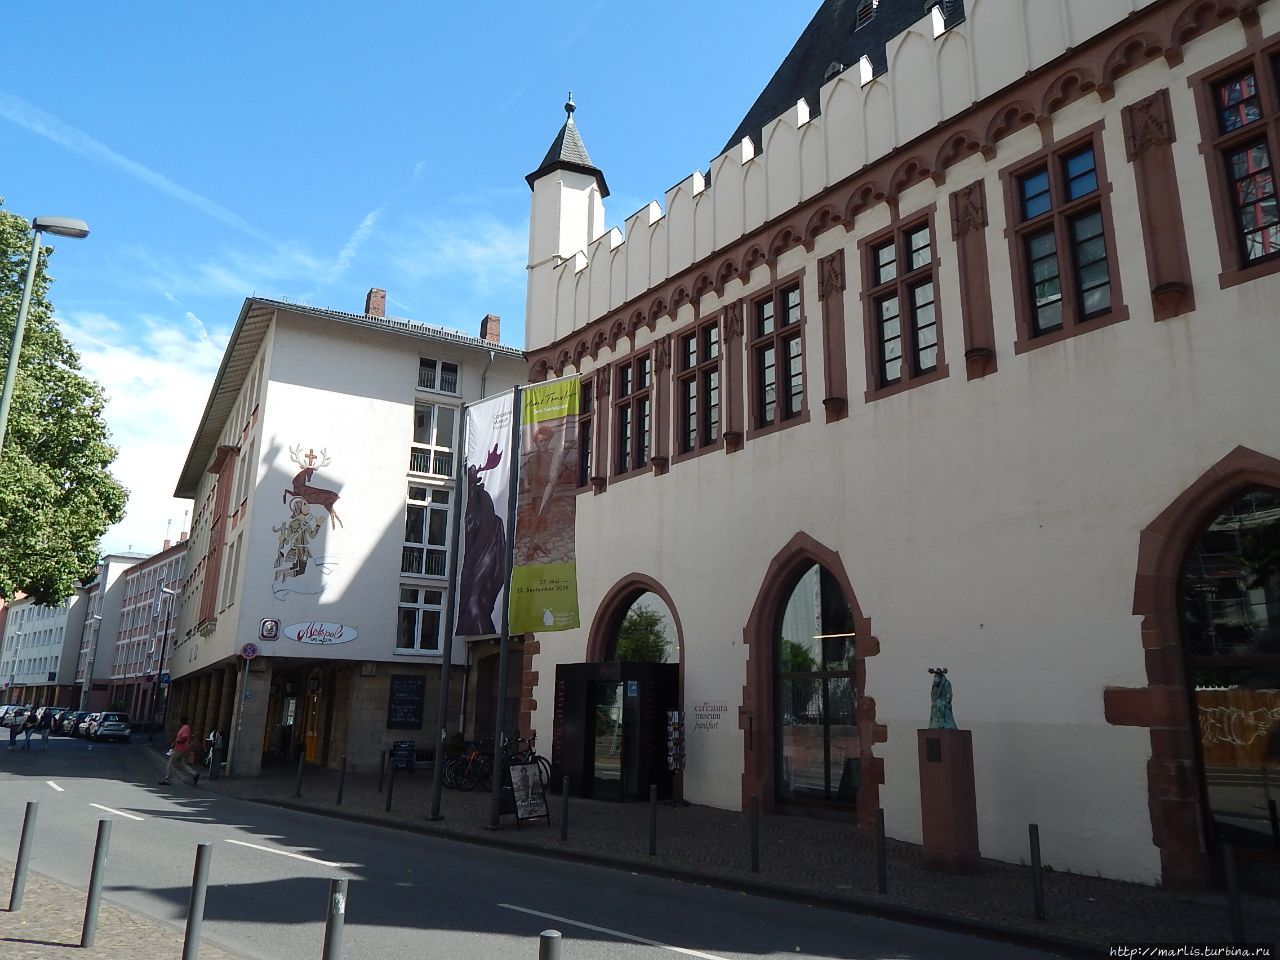 Ляйнвандхауз — дом ткачей, ныне музей Карикатуры. Здание построено в 15 веке на месте бывшего Еврейского квартала, в 1944 году было разрушено, после войны реконструировано.